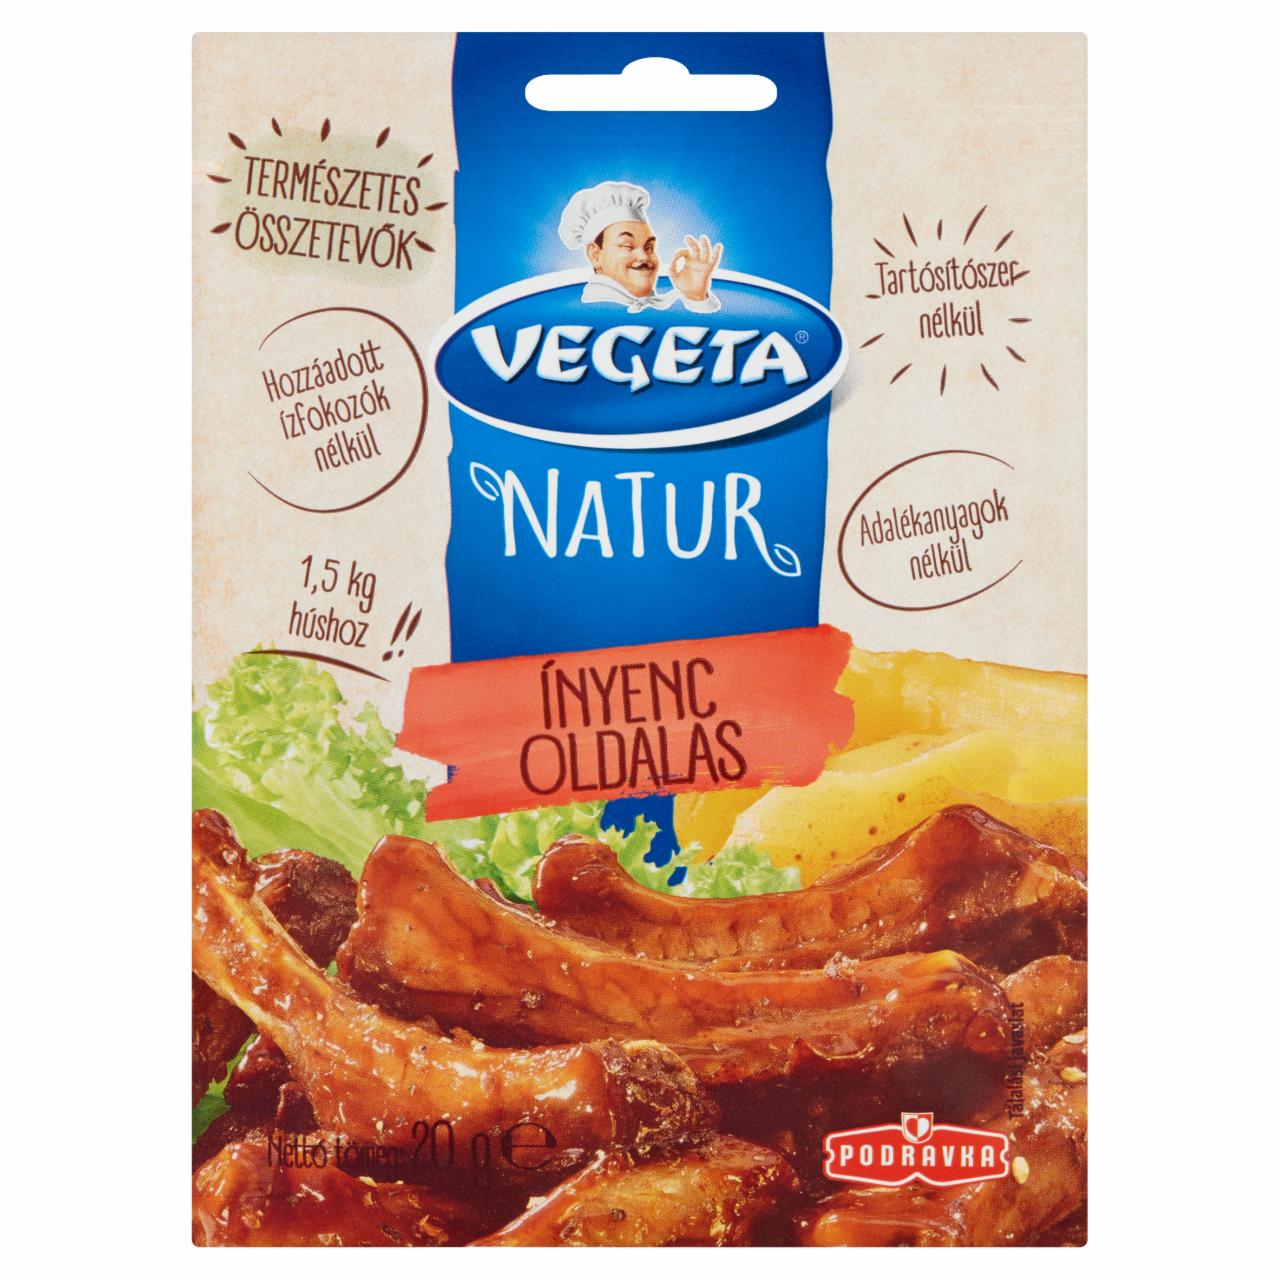 Képek - Vegeta Natur ínyenc oldalas fűszerkeverék 20 g